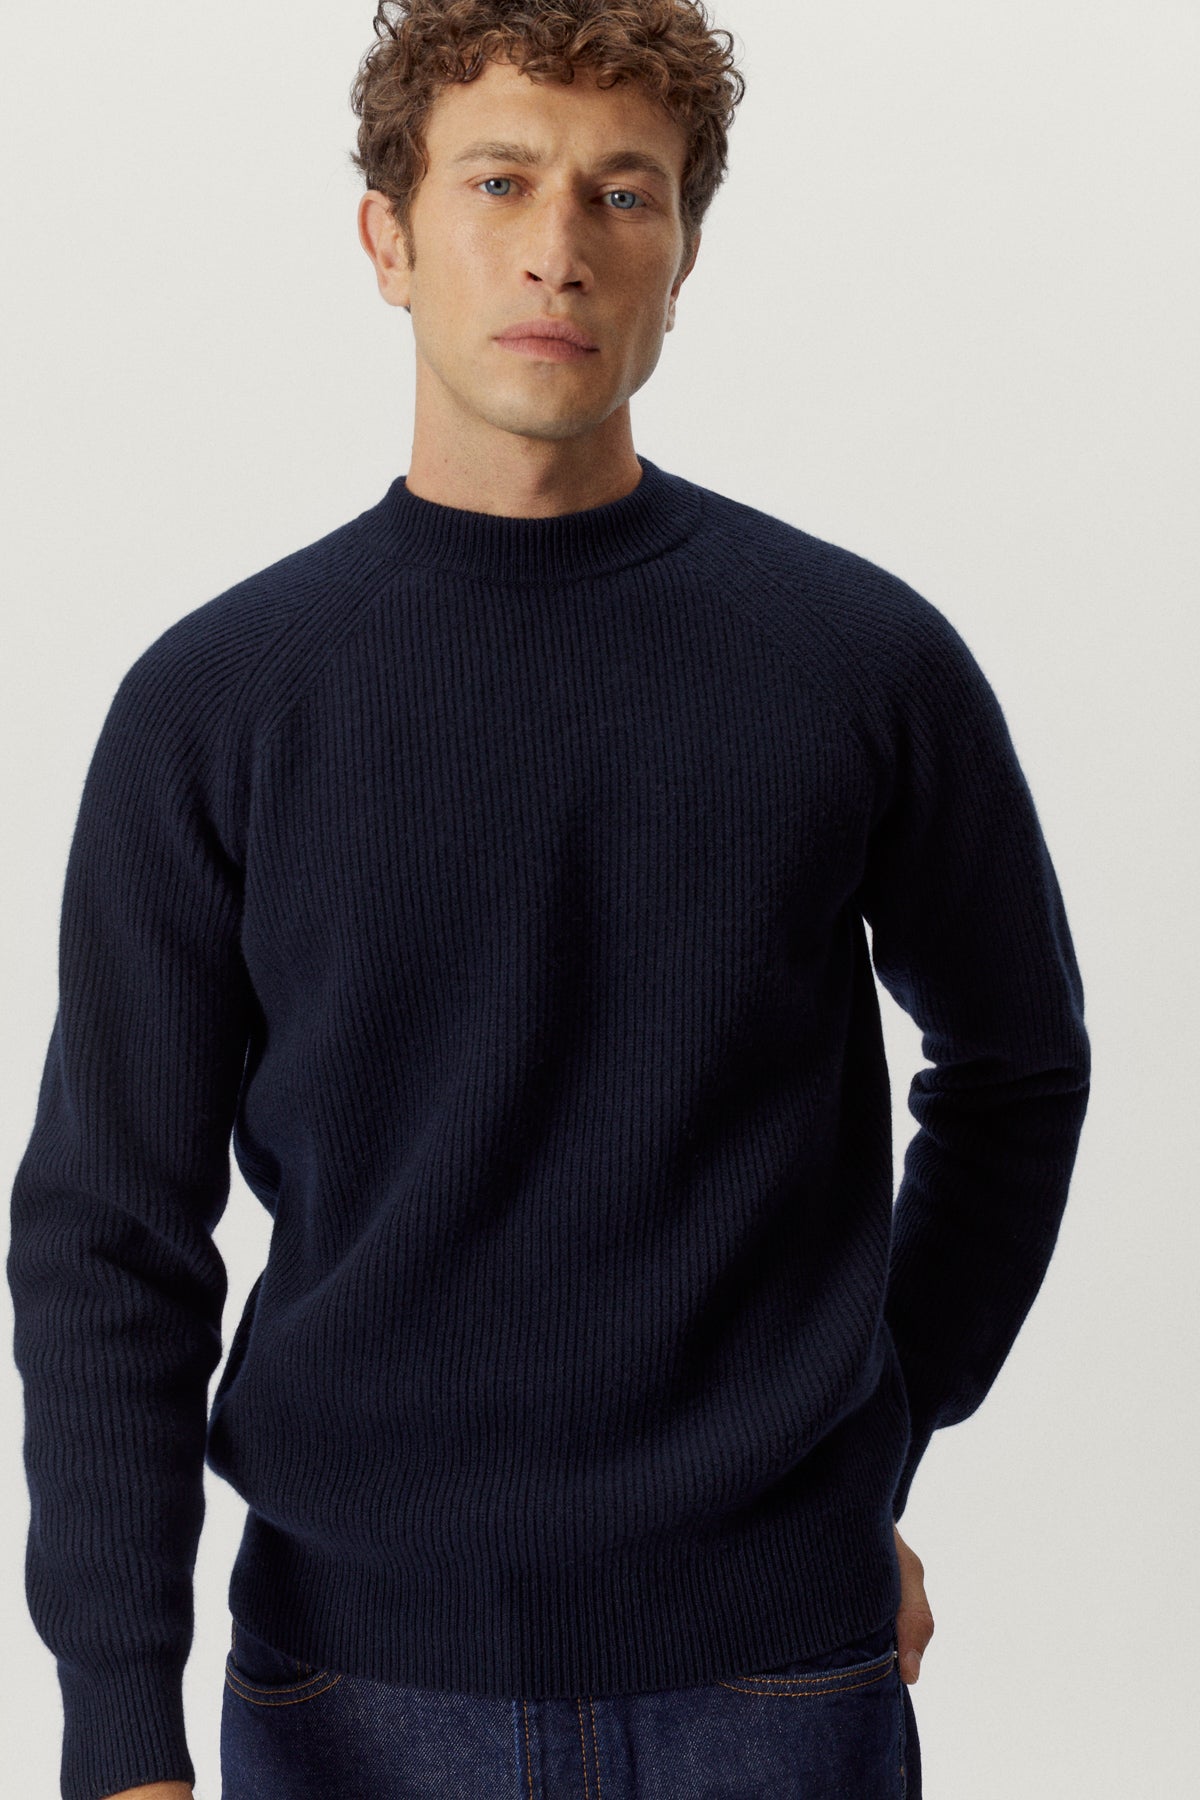 the woolen perkins sweater blue navy